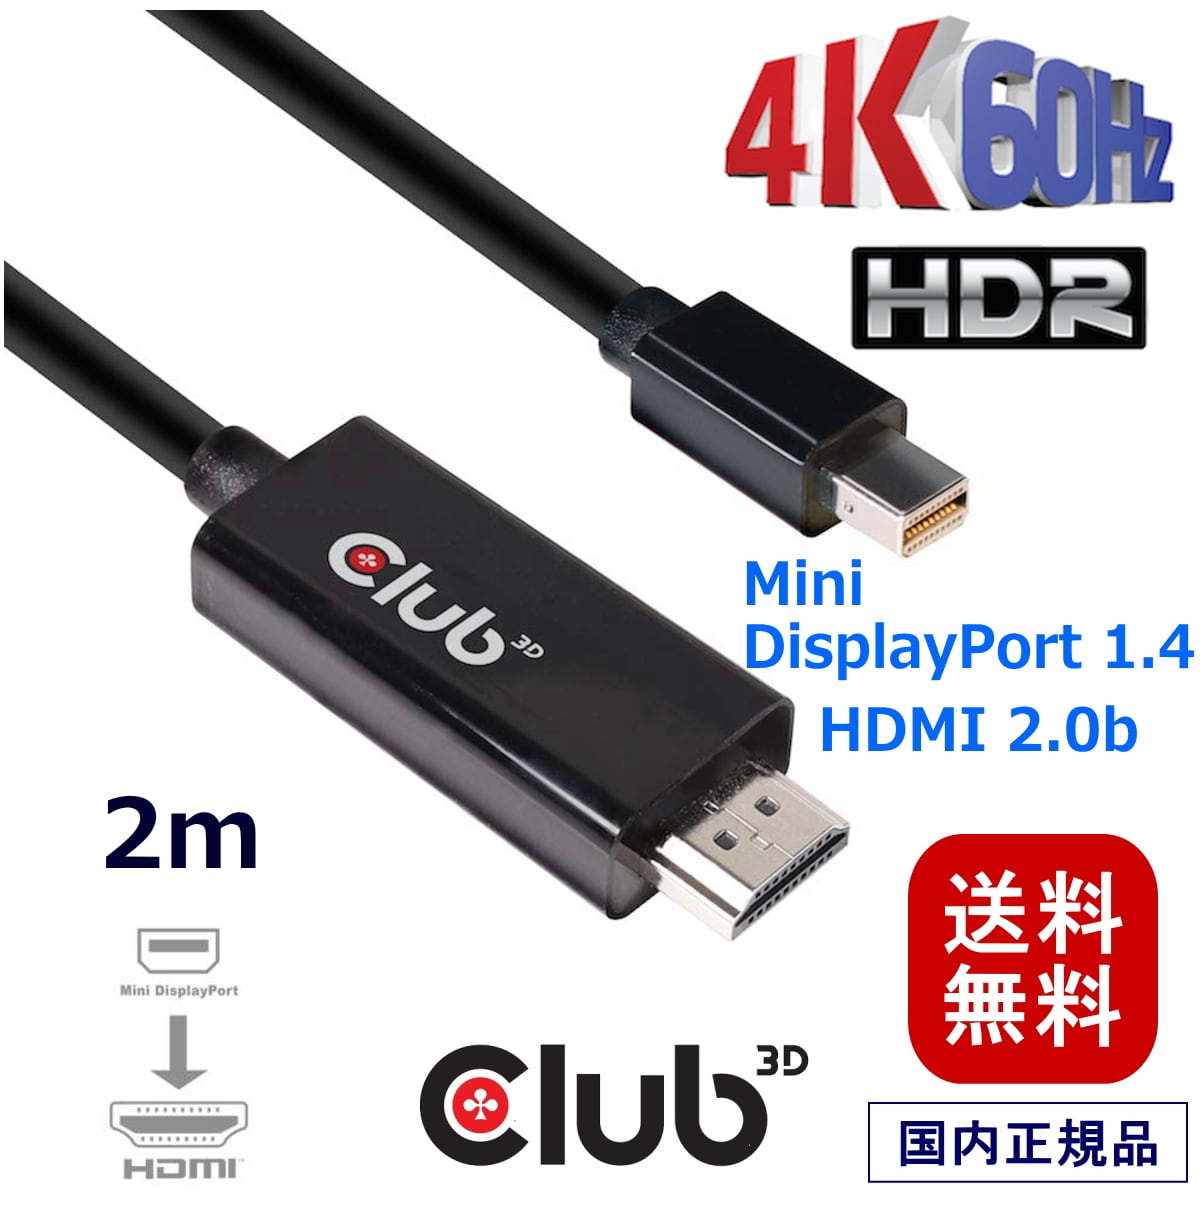 CAC-1182】Club3D Mini DisplayPort 1.4 to HDMI 2.0b HDR（ハイ